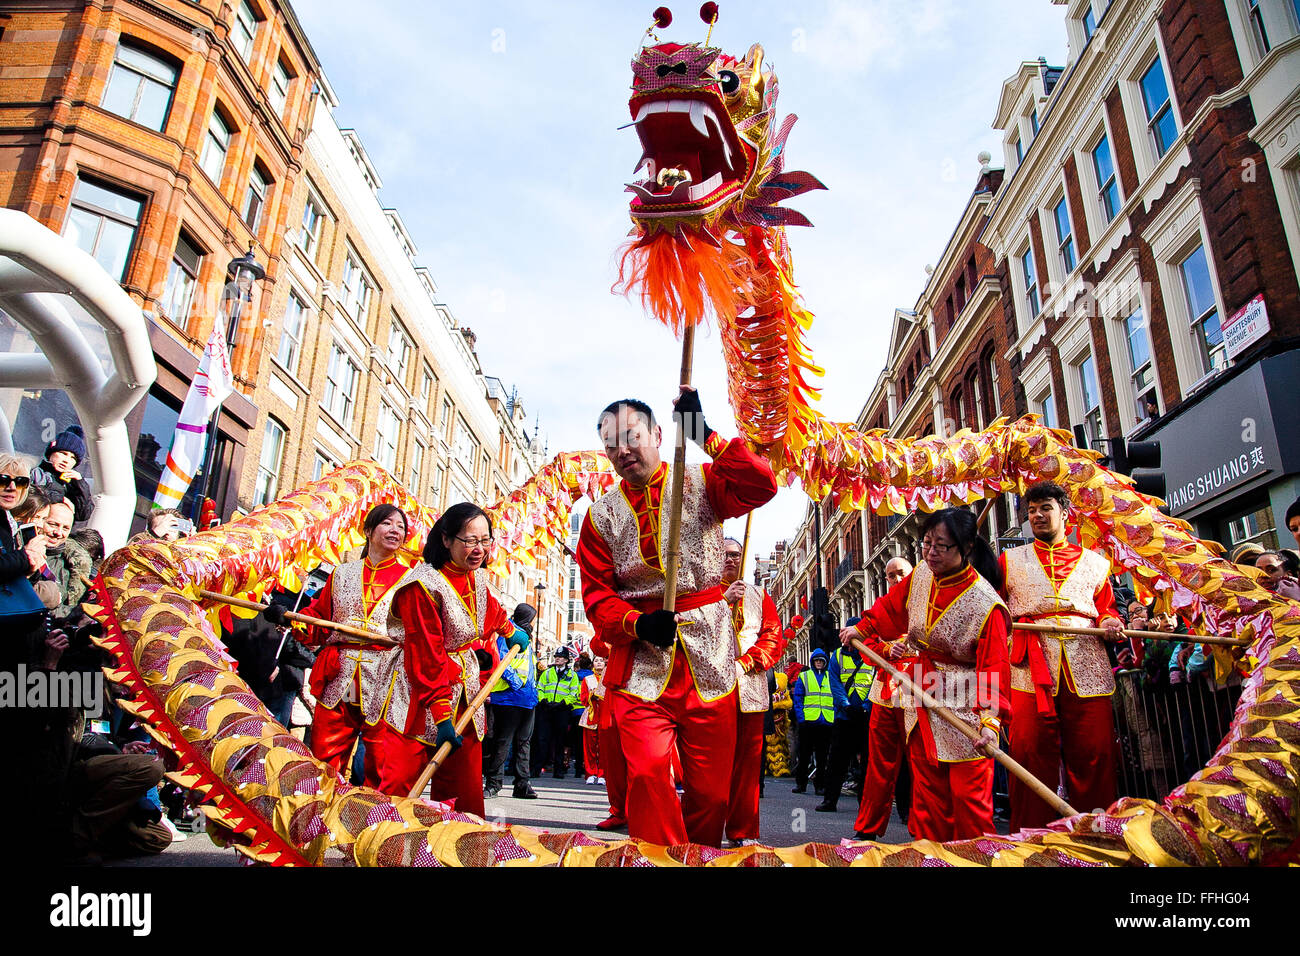 Londres, Reino Unido. 14 de febrero de 2016. El dragón chino baila en el Desfile del Año Nuevo chino 2016 - El Año del Mono en el centro de Londres con la celebración más grande fuera de Asia. Las murgas de artistas participaron en el Desfile del Año Nuevo Chino en Charing Cross Road y Chinatown, con otras celebraciones en Trafalgar Square. El evento está organizado por la Asociación de Chinos de Chinatown de Londres. Crédito: Dinendra Haria/Alamy Live News Foto de stock